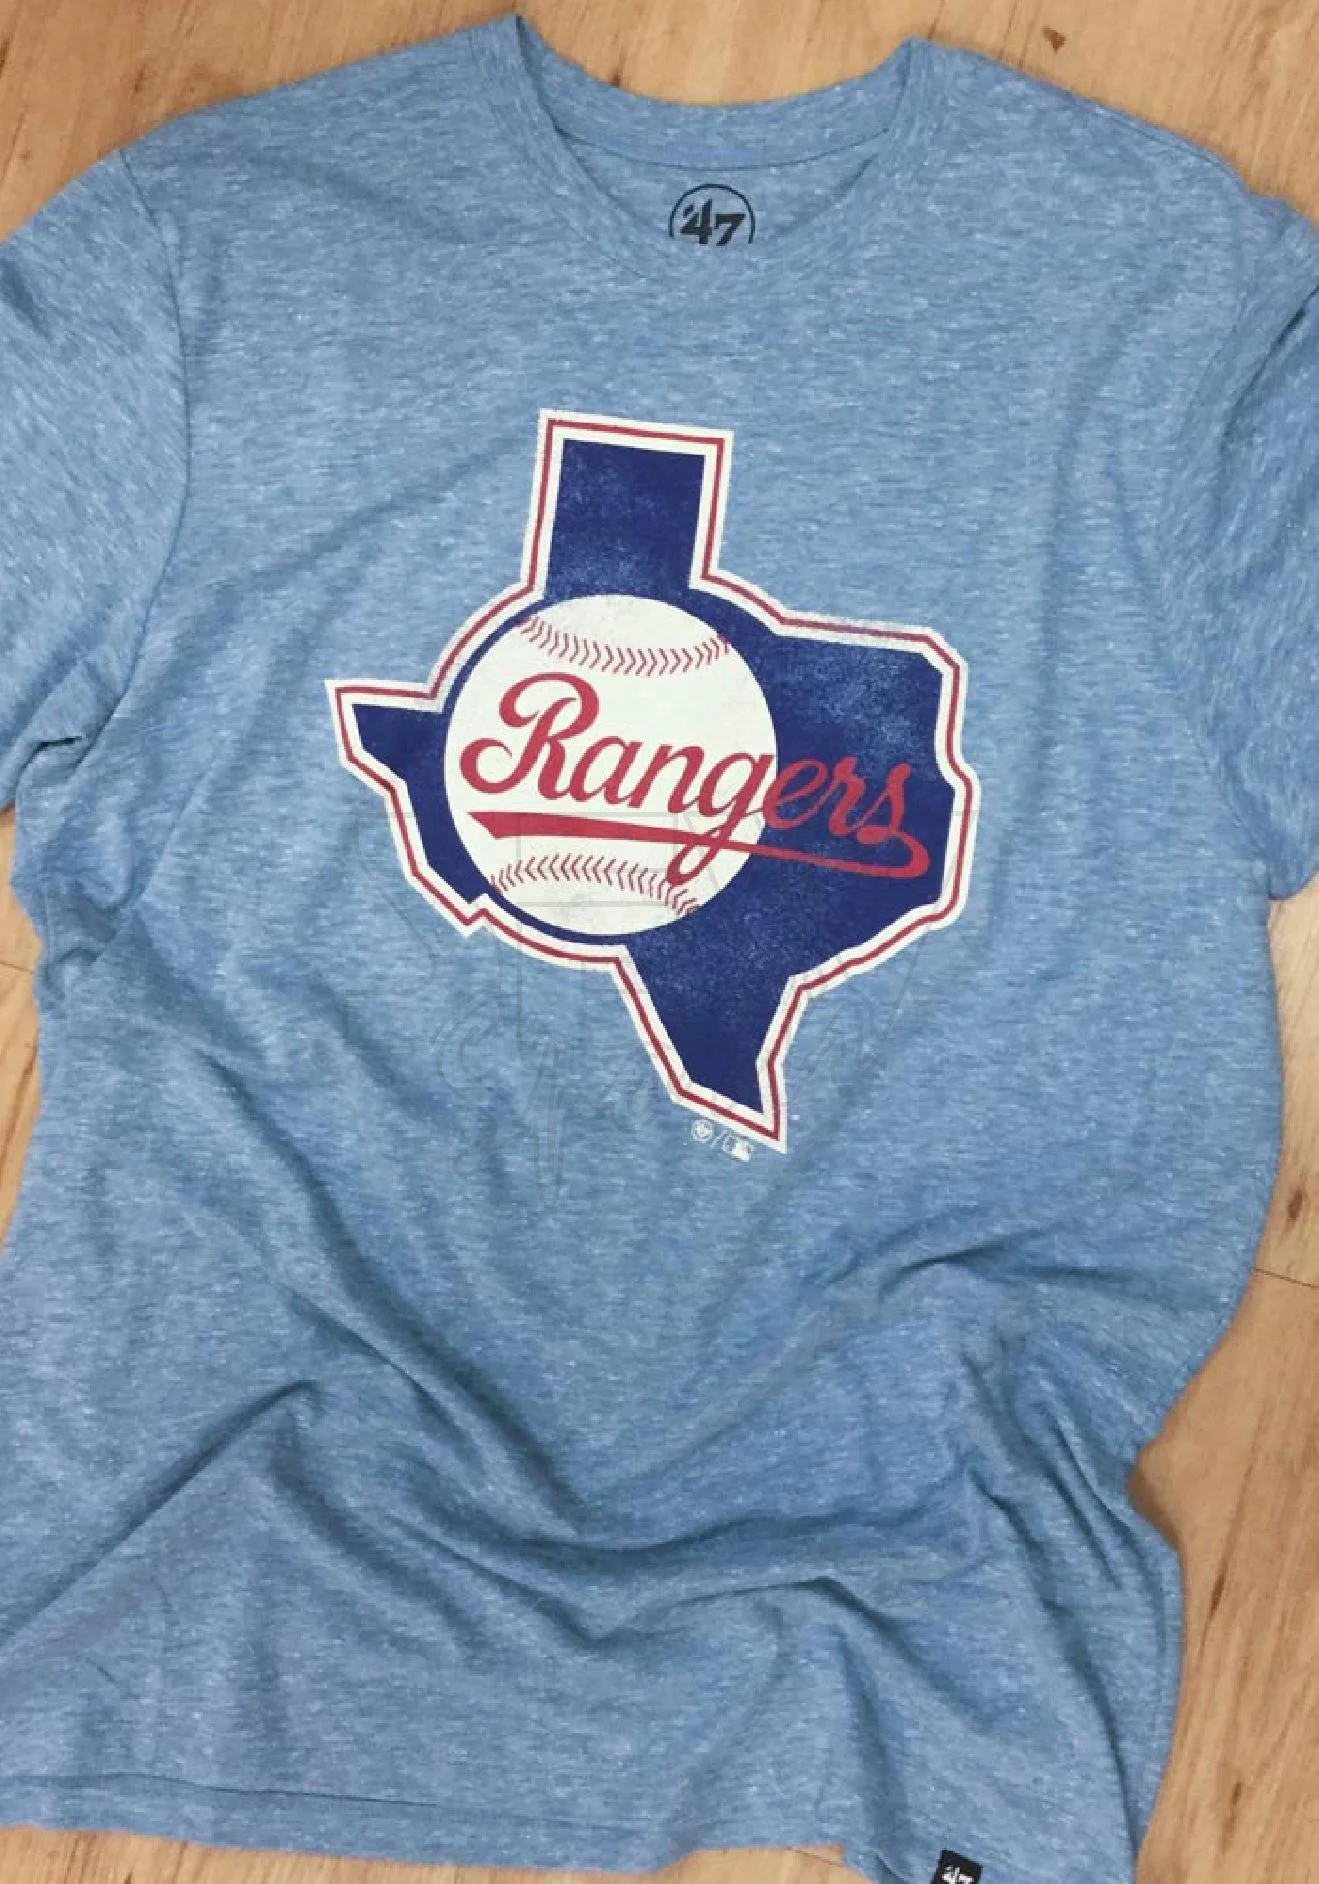 Texas Rangers Soft As A Grape Toddler Cooperstown Collection Shutout  T-Shirt - Light Blue